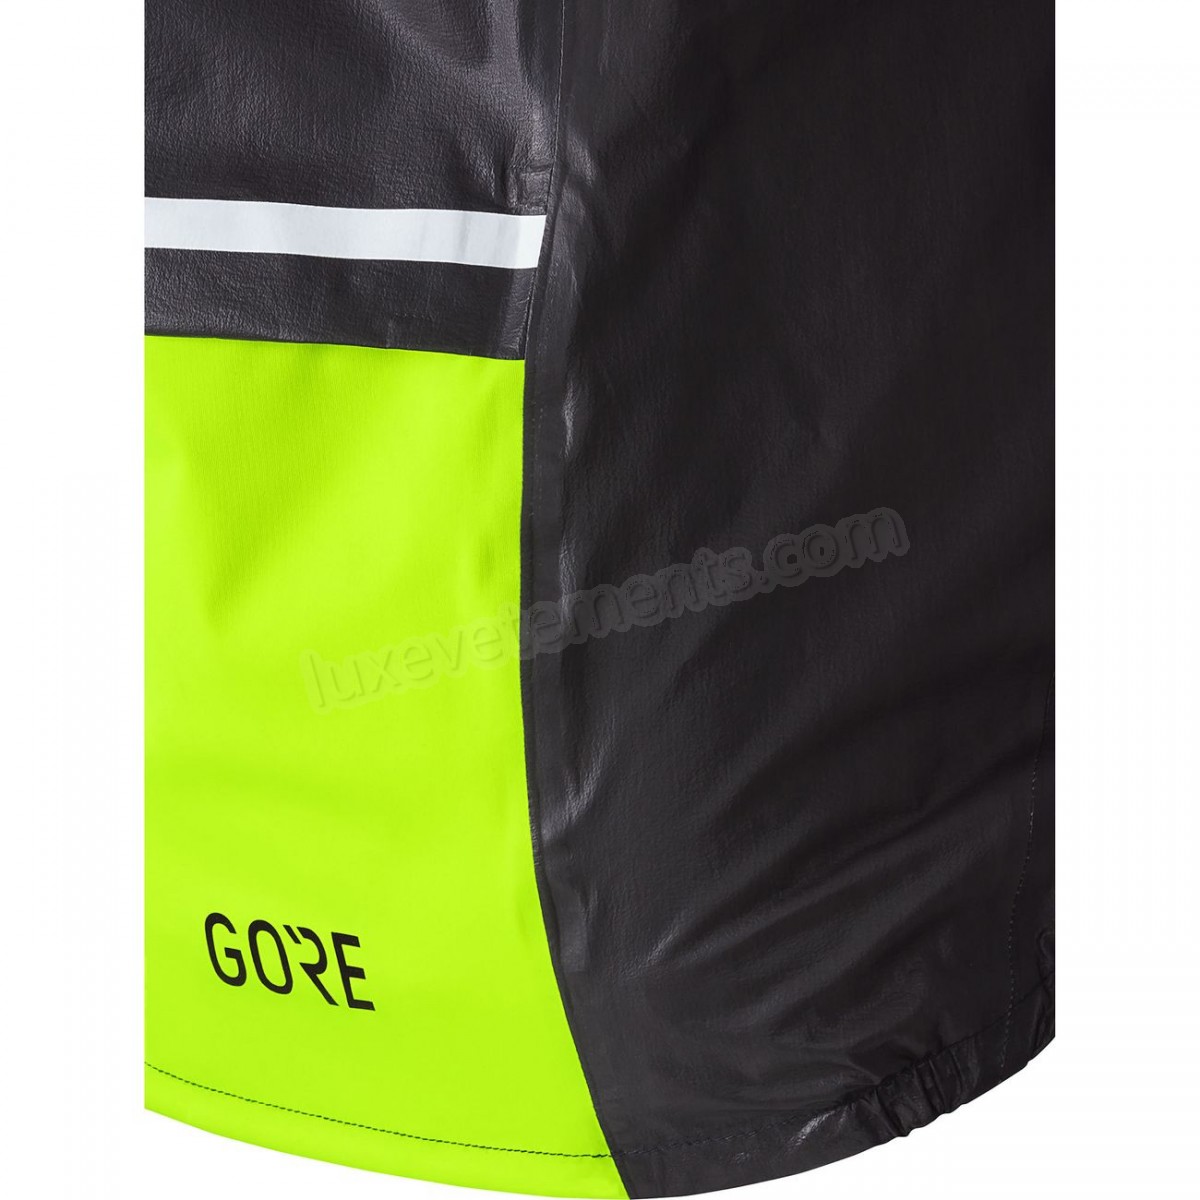 Gore-Cyclisme sur route homme GORE Imperméable Gore-Tex C5 1985 Insulated VIZ Vente en ligne - -2